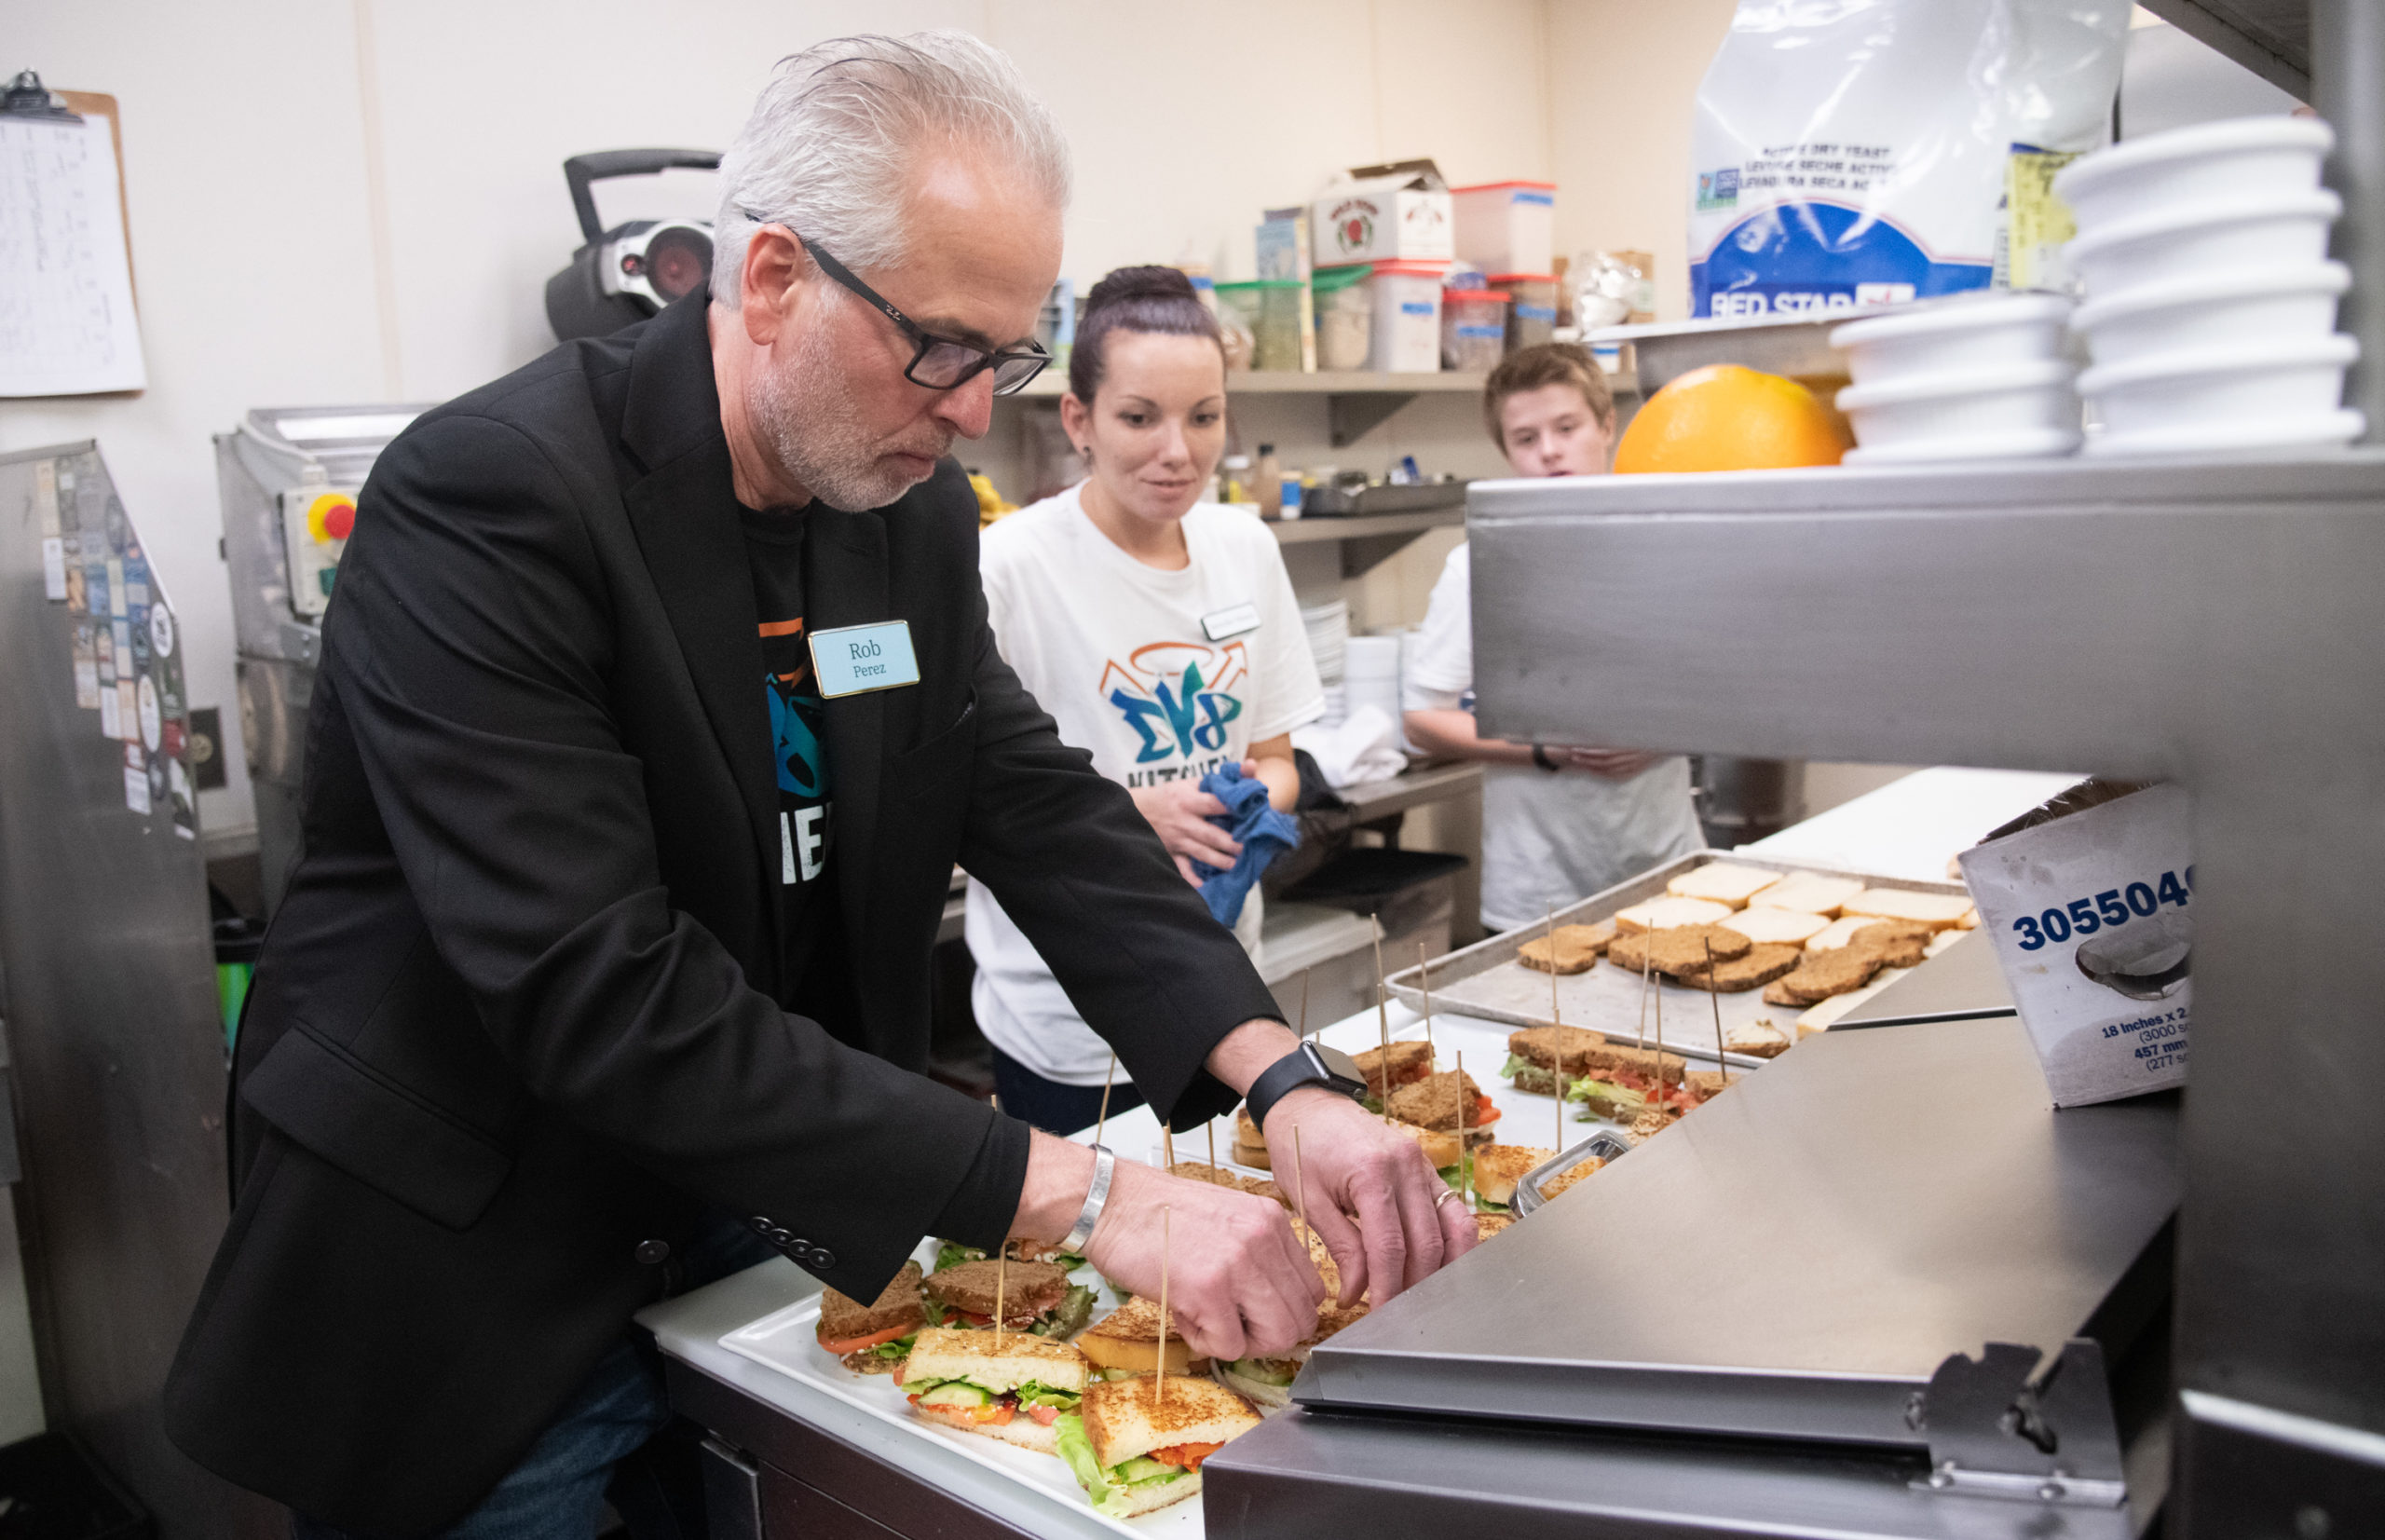 DV8 Kitchen cofounder and co-owner Rob Perez and DV8 senior baker Jennifer prepare sandwiches.